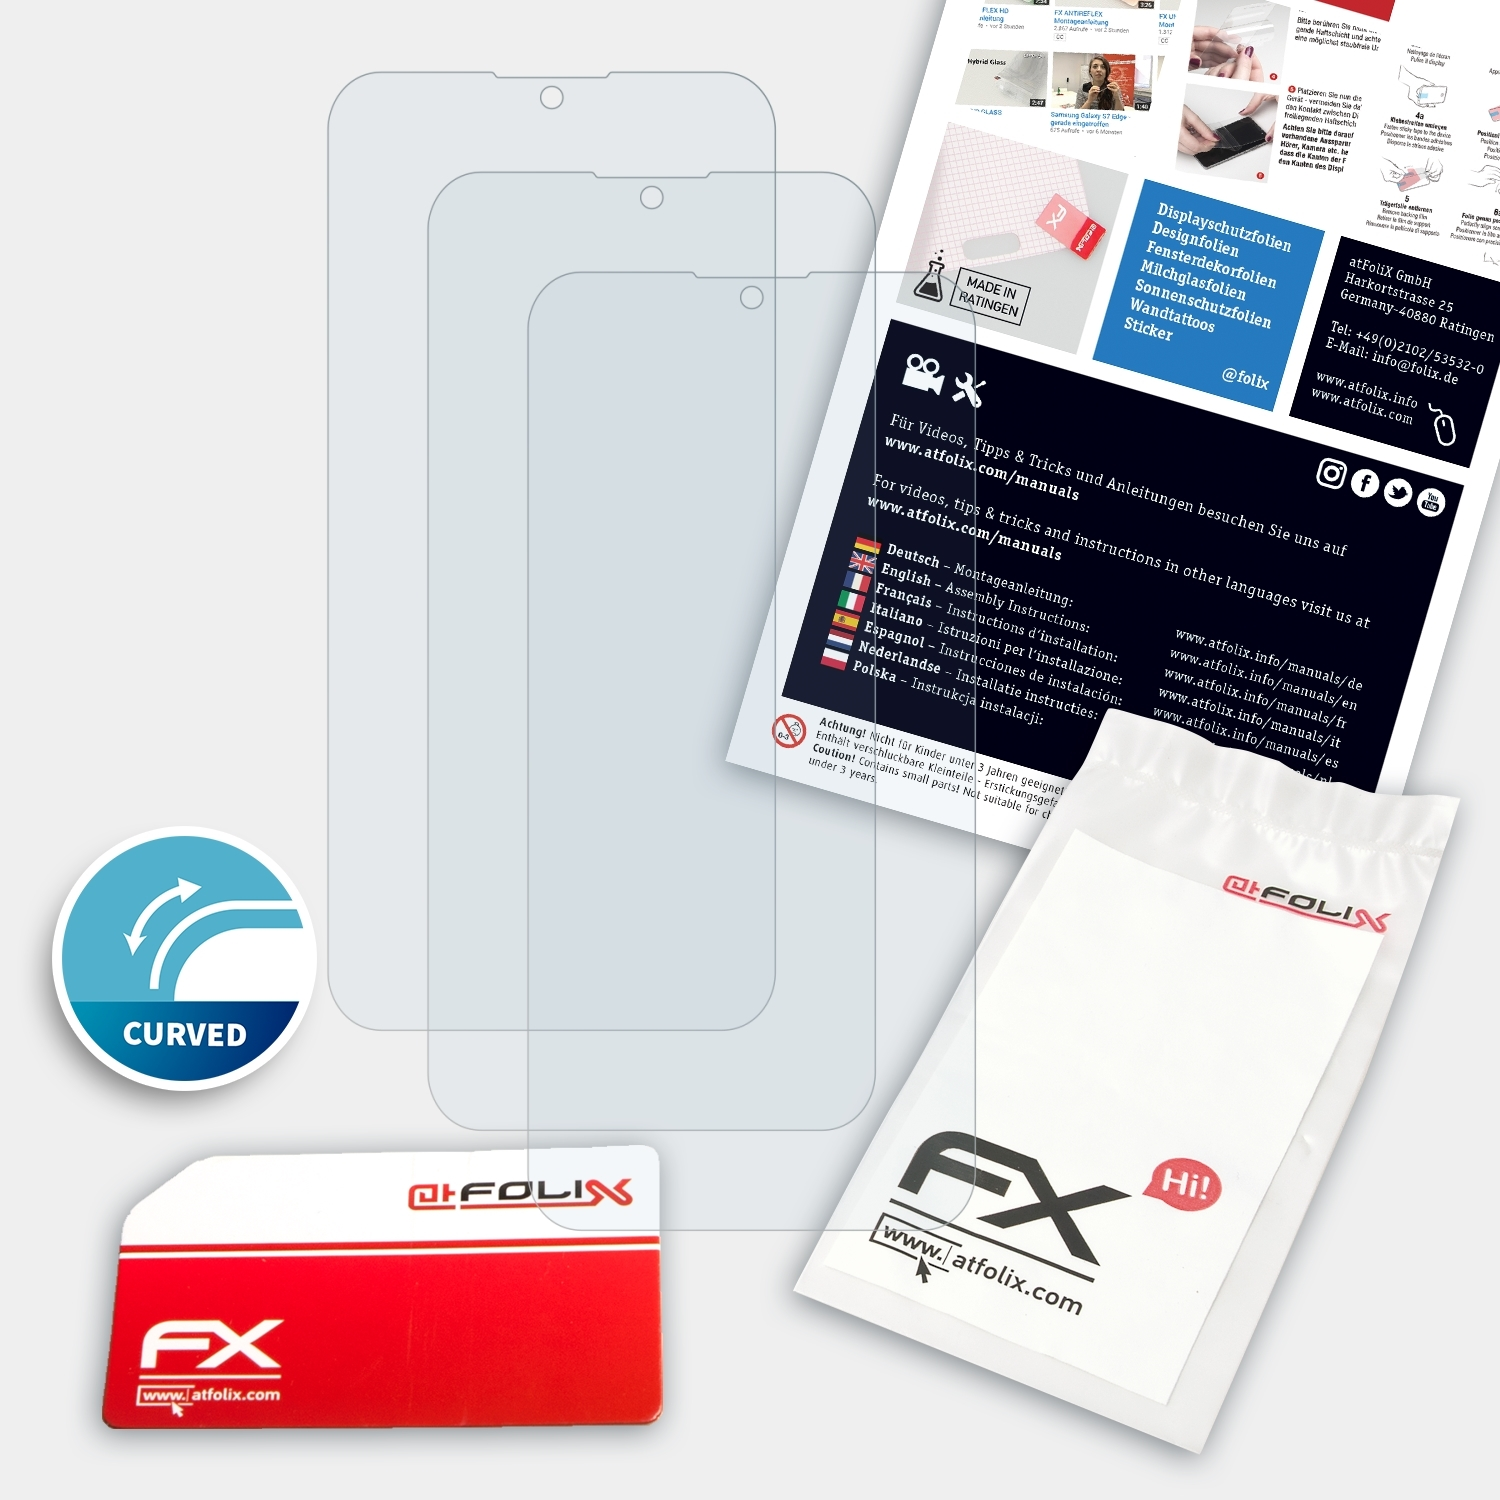 ATFOLIX 3x FX-ActiFleX Displayschutz(für Y15 2020) Vivo